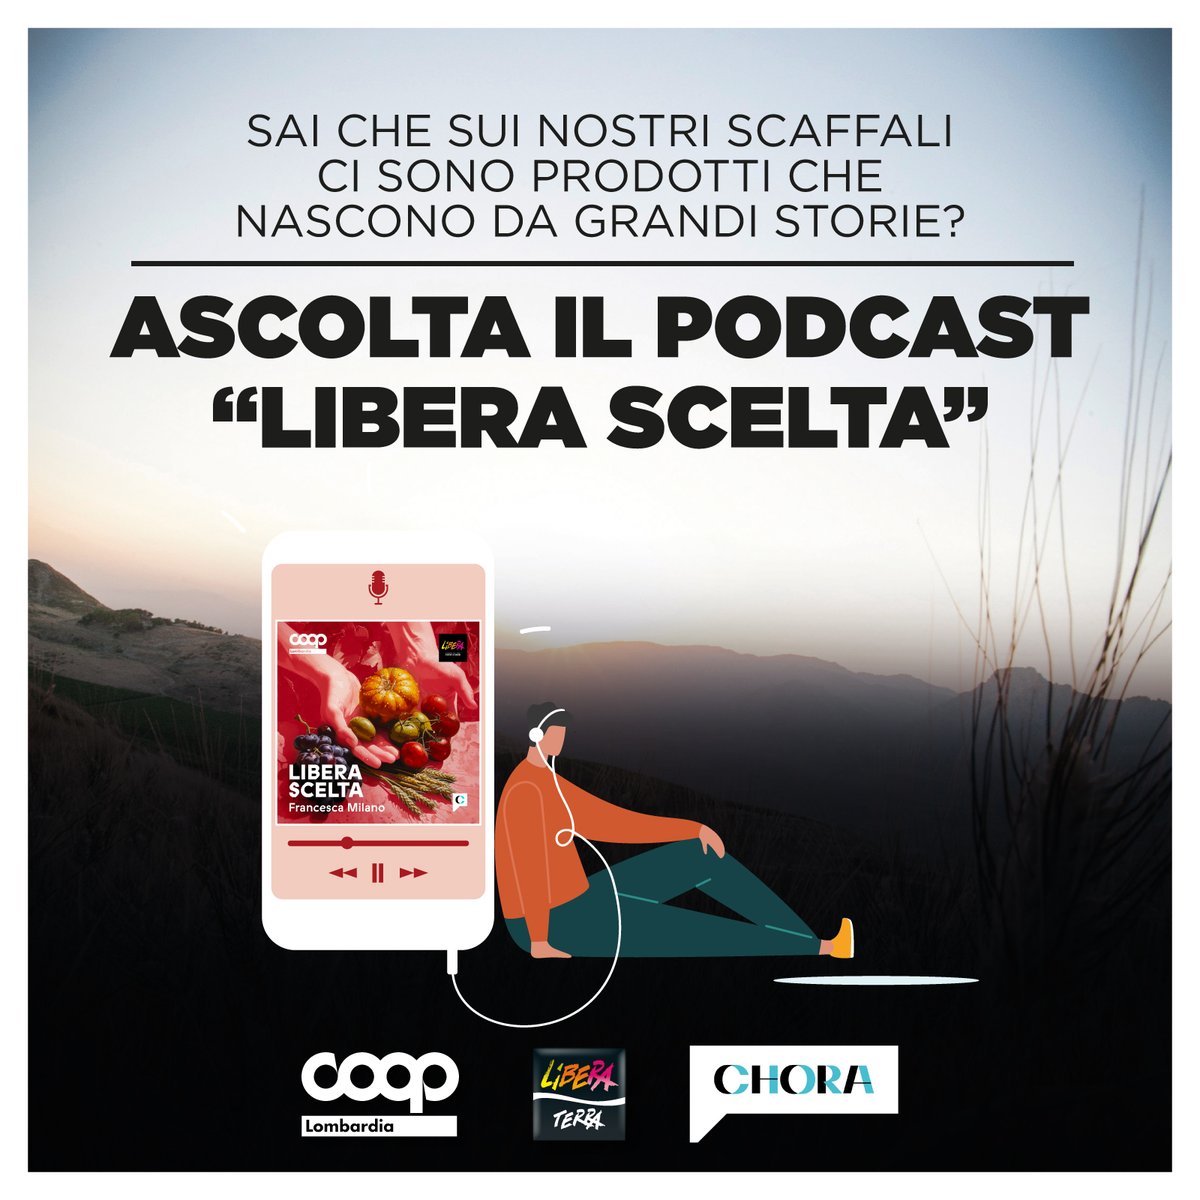 Ascolta 'Libera scelta”, il nuovo podcast che abbiamo realizzato con @Chora_Media e @LiberaTerra sulle storie dietro ai prodotti che nascono sulle terre confiscate alle mafie ➜ choramedia.com/podcast/libera… #21marzo